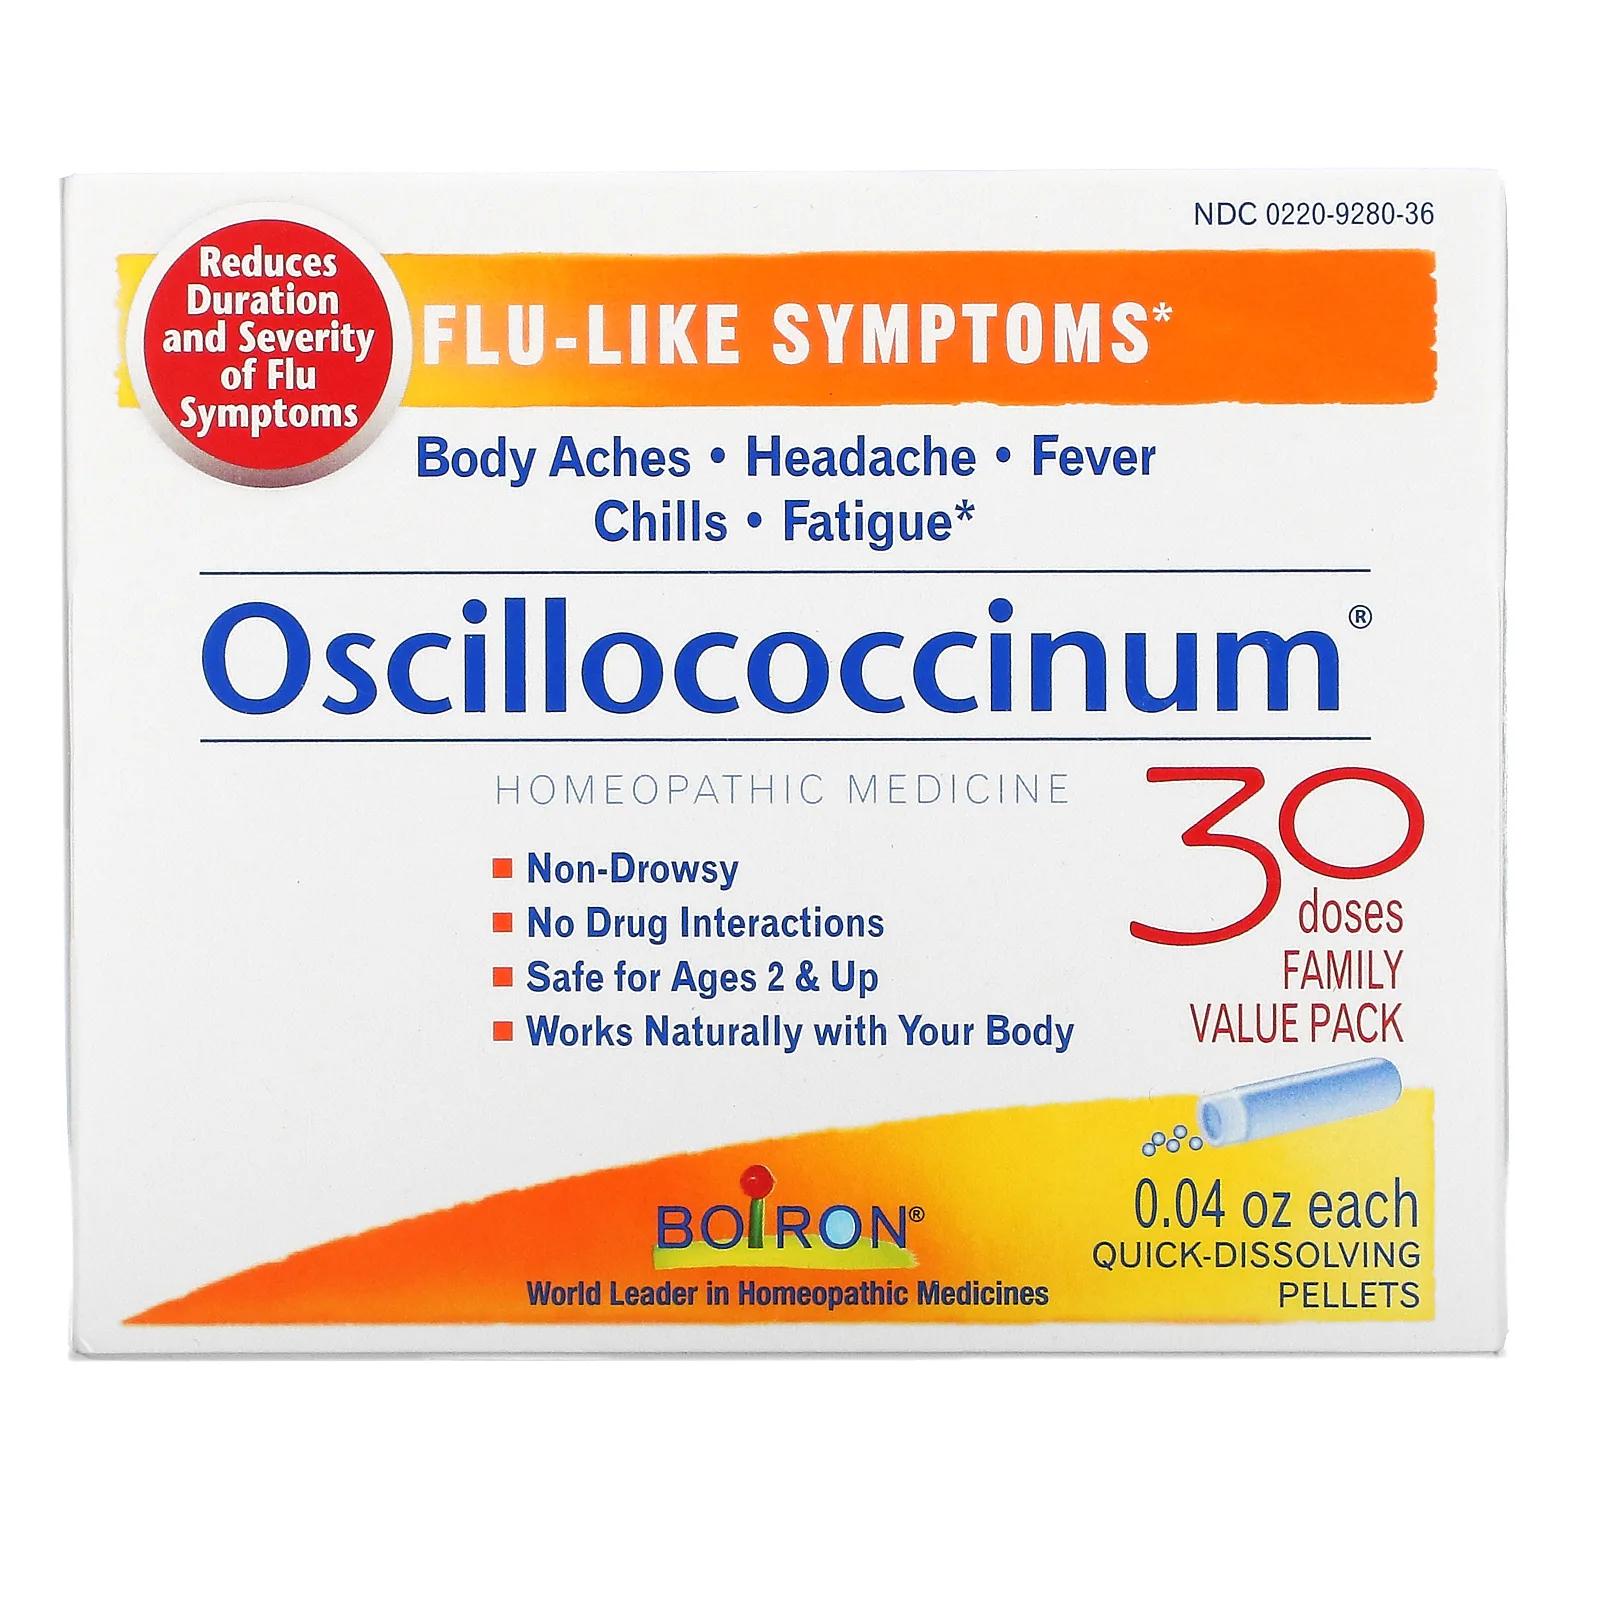 Boiron Oscillococcinum средство для облегчения симптомов гриппа для особ старше 2 лет 30 быстрорастворимых гранул по 1,13 г (0,04 унции)